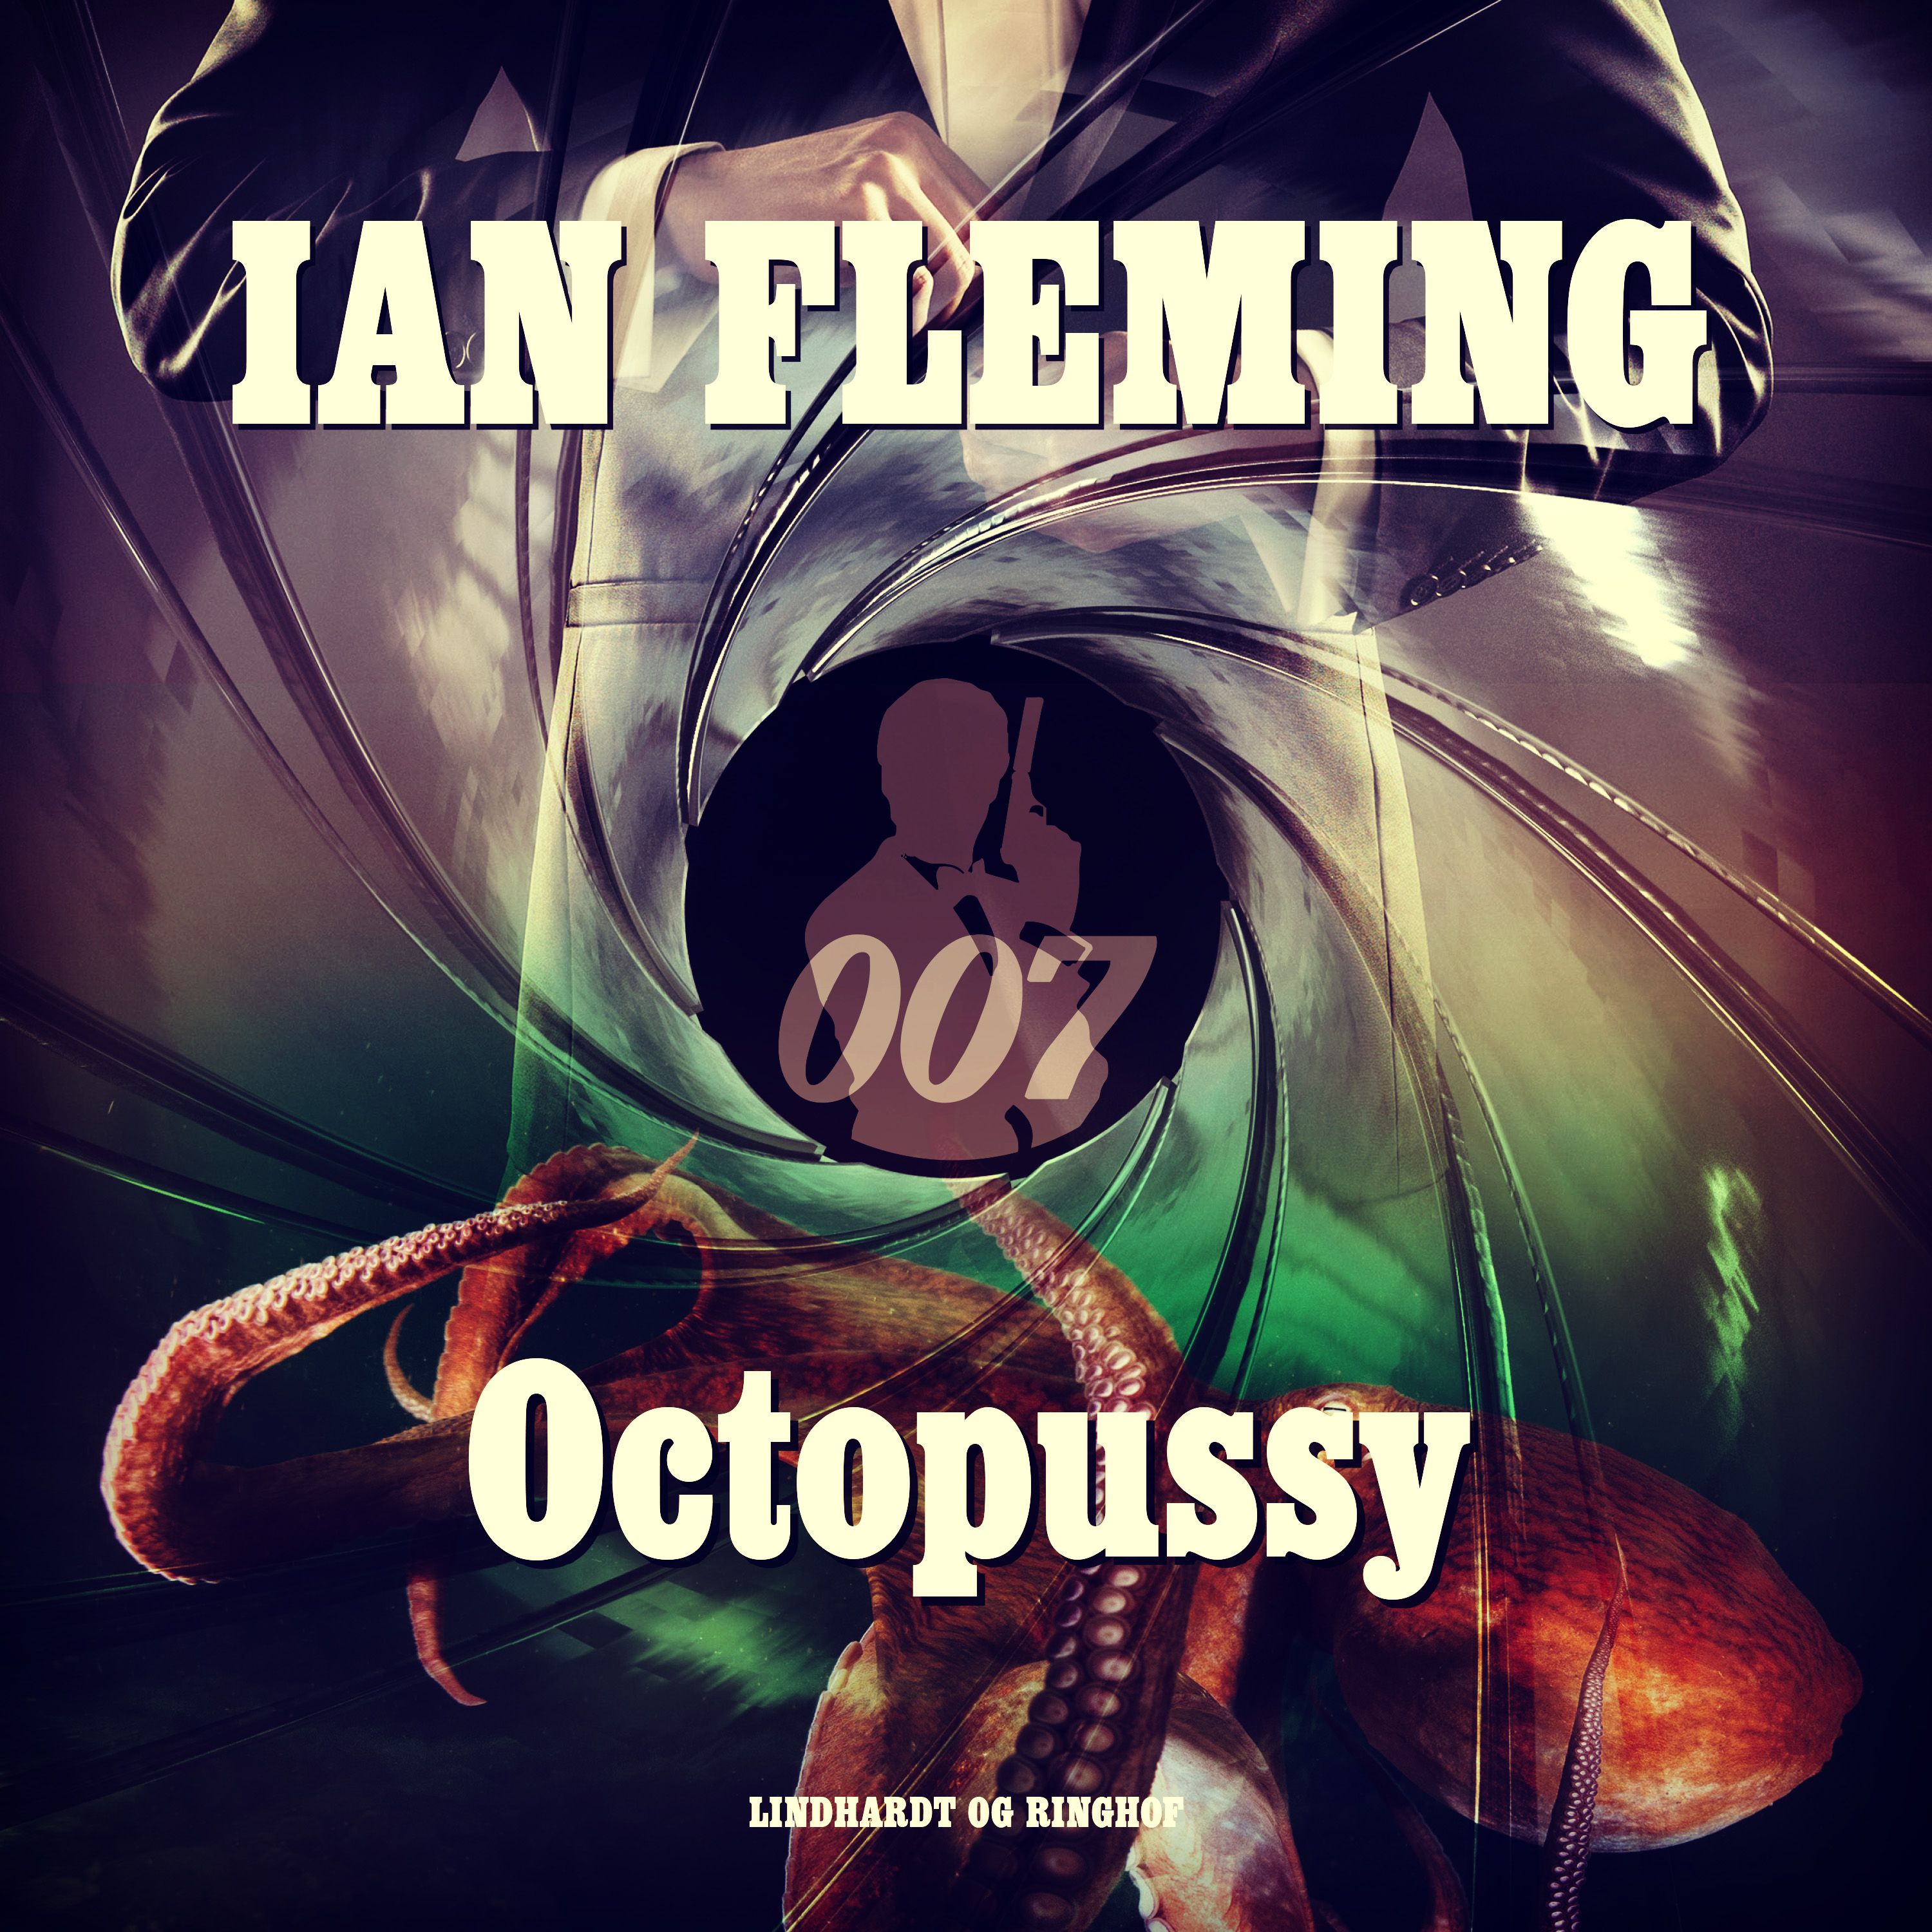 Octopussy, ljudbok av Ian Fleming